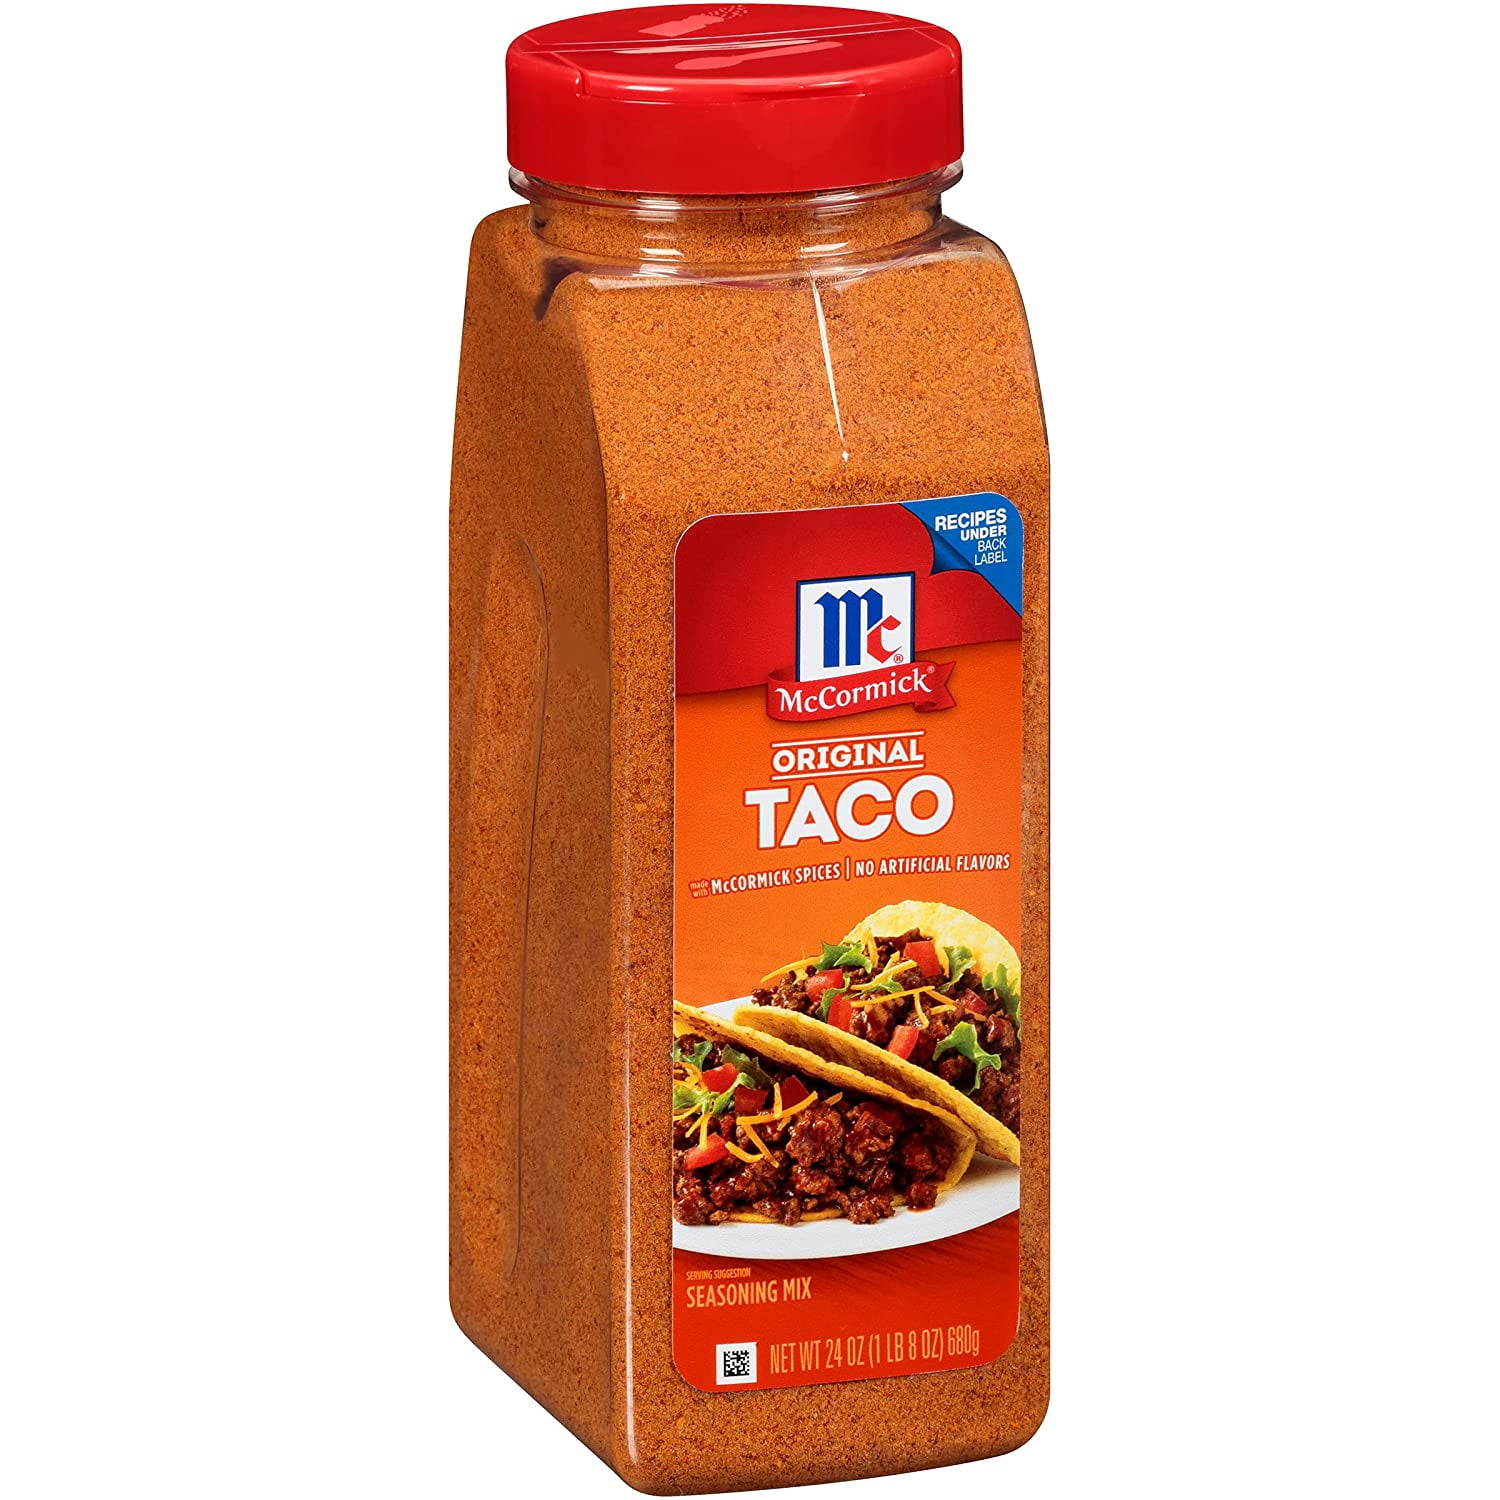 Original Taco Mix24 oz Walmart.com